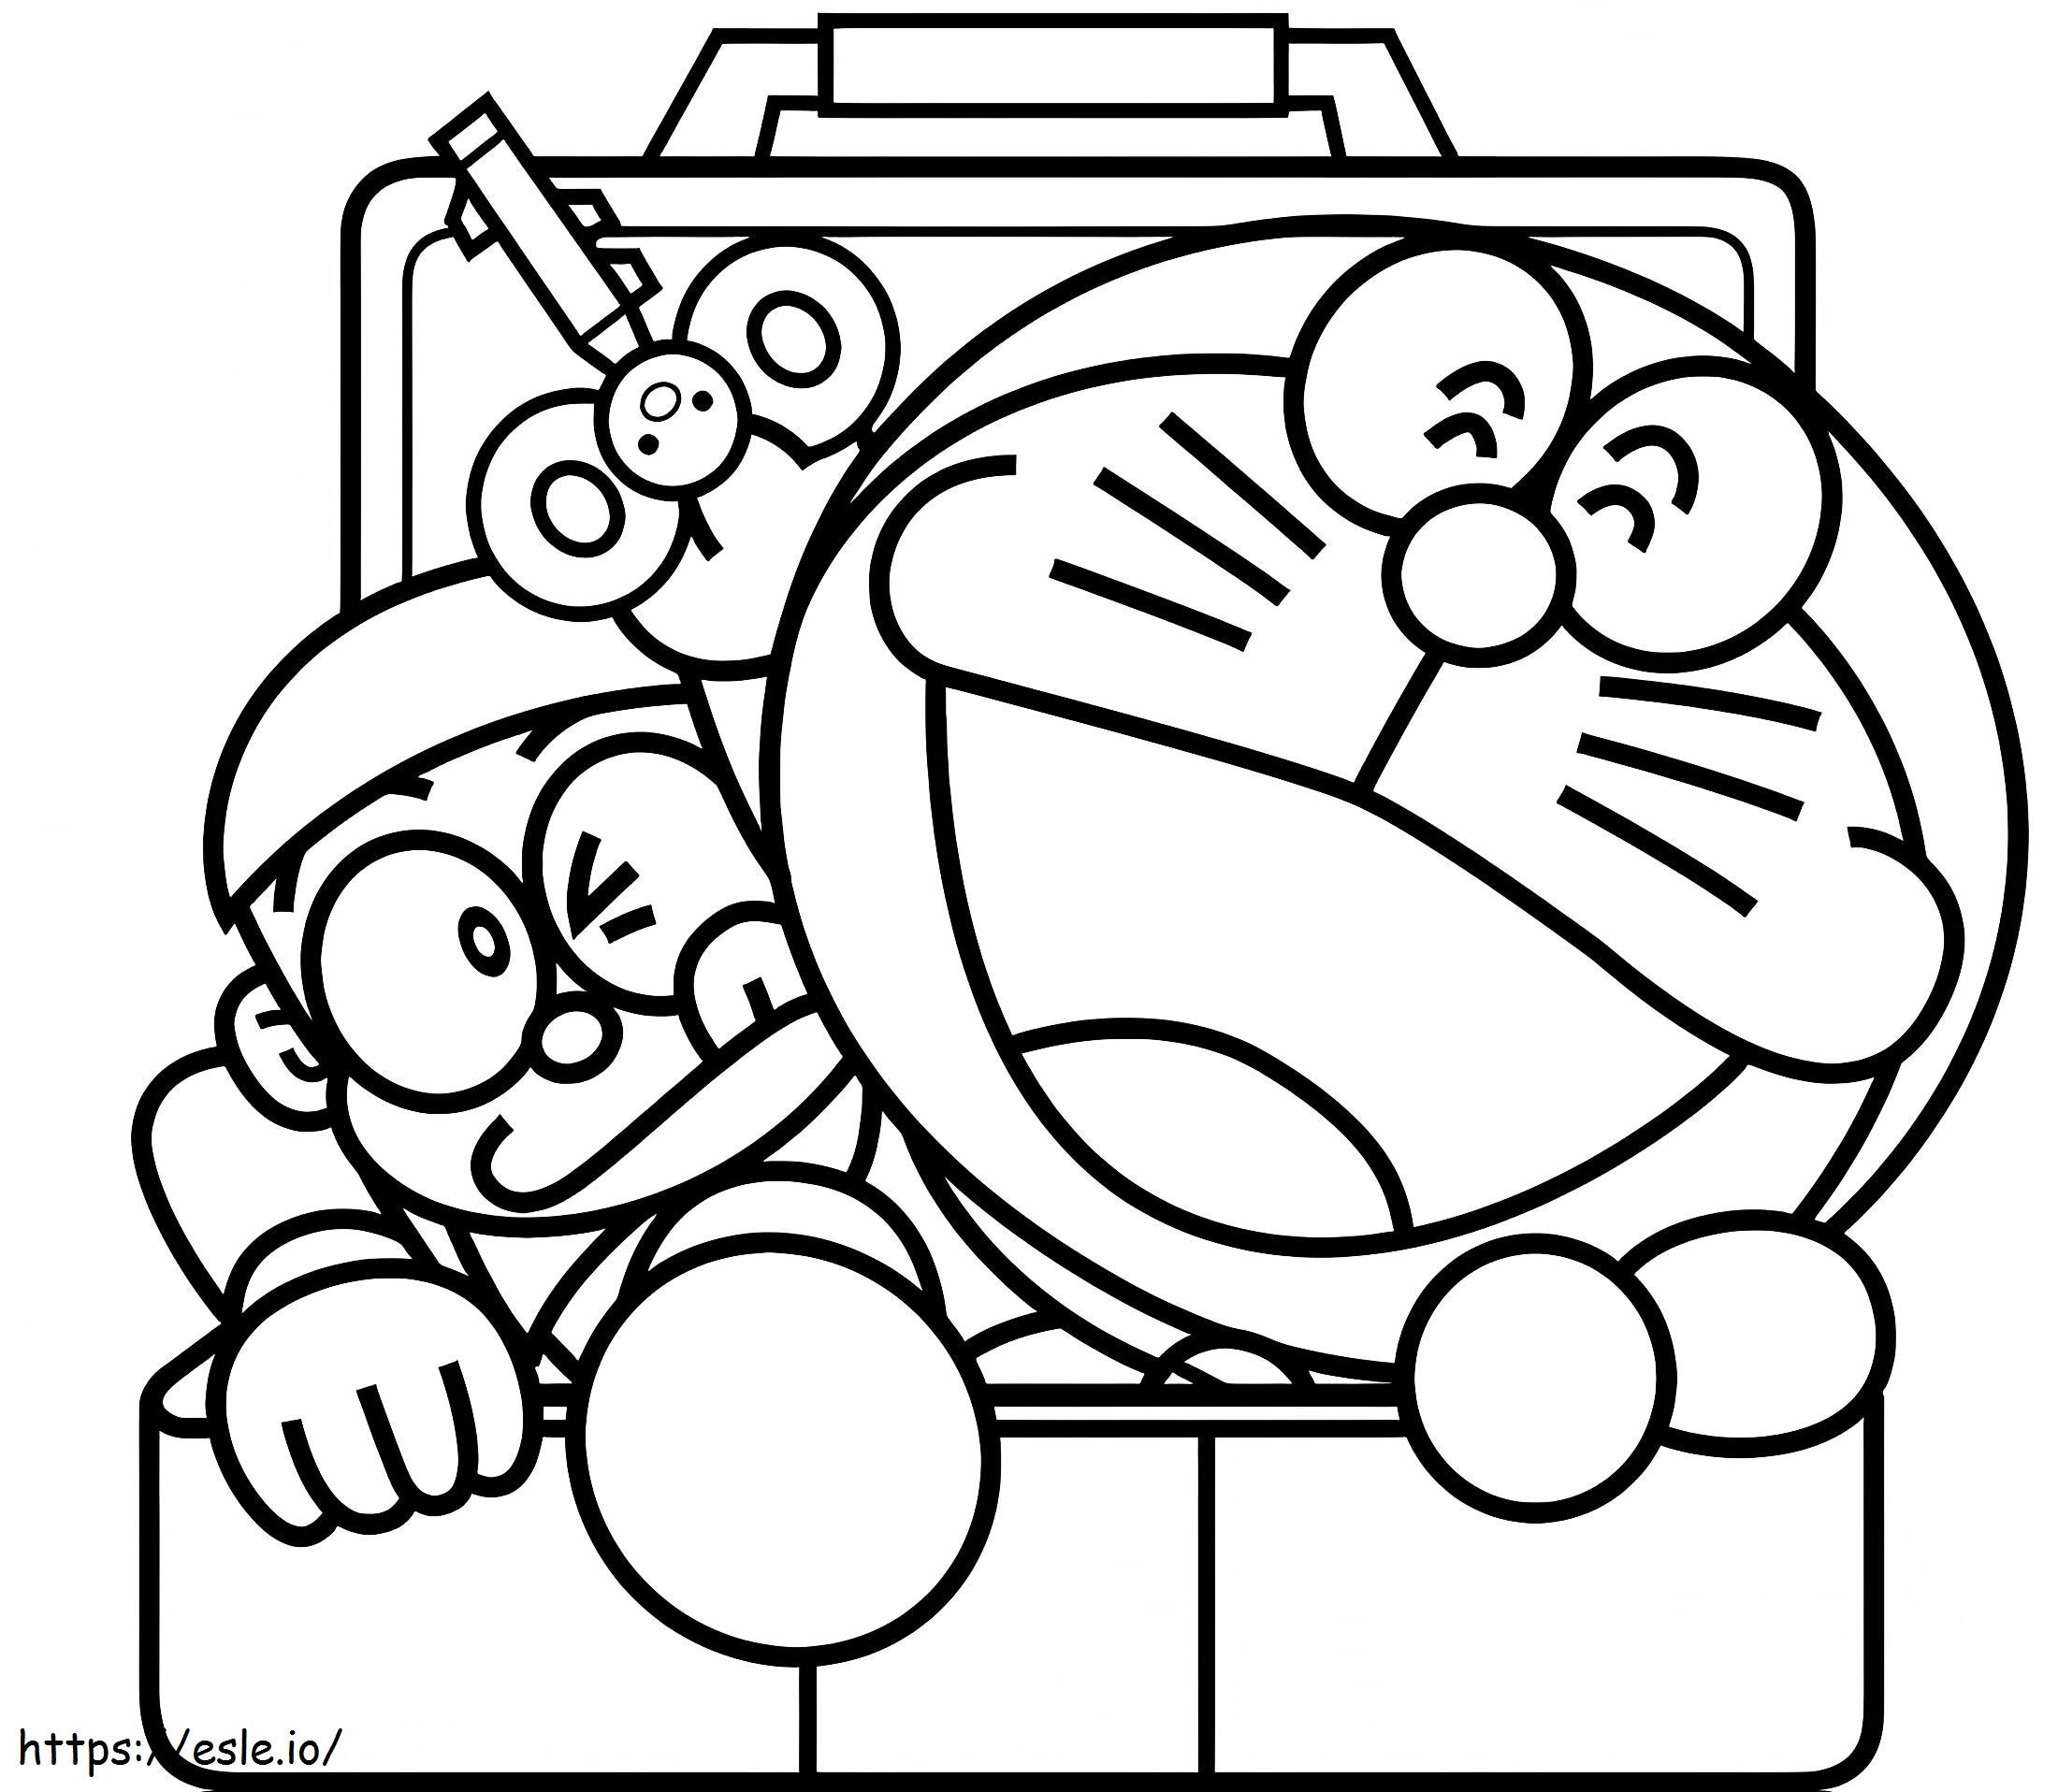  Doraemon ve Nobita Kutuda A4 boyama